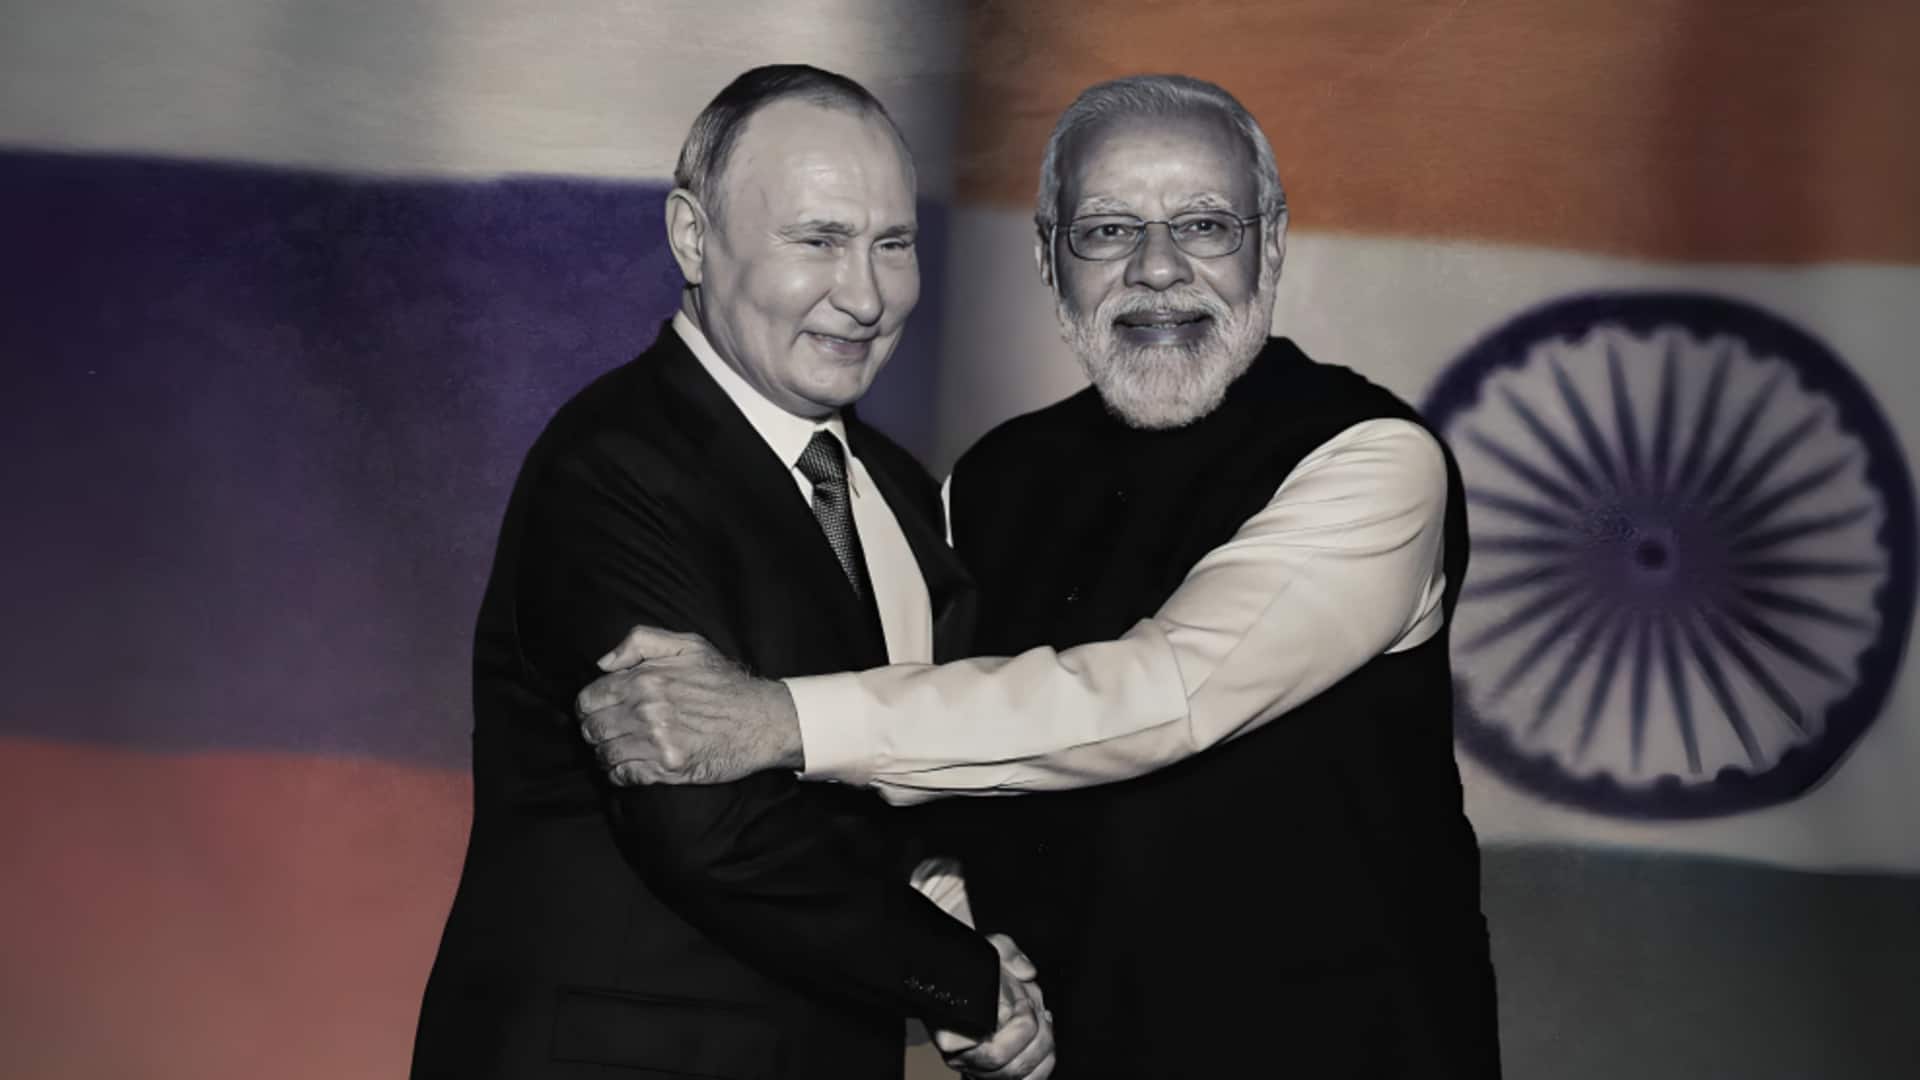 भारत और रूस के बीच मजबूत होगा पर्यटन का रिश्ता, मुक्त वीजा पर बातचीत शुरू होगी